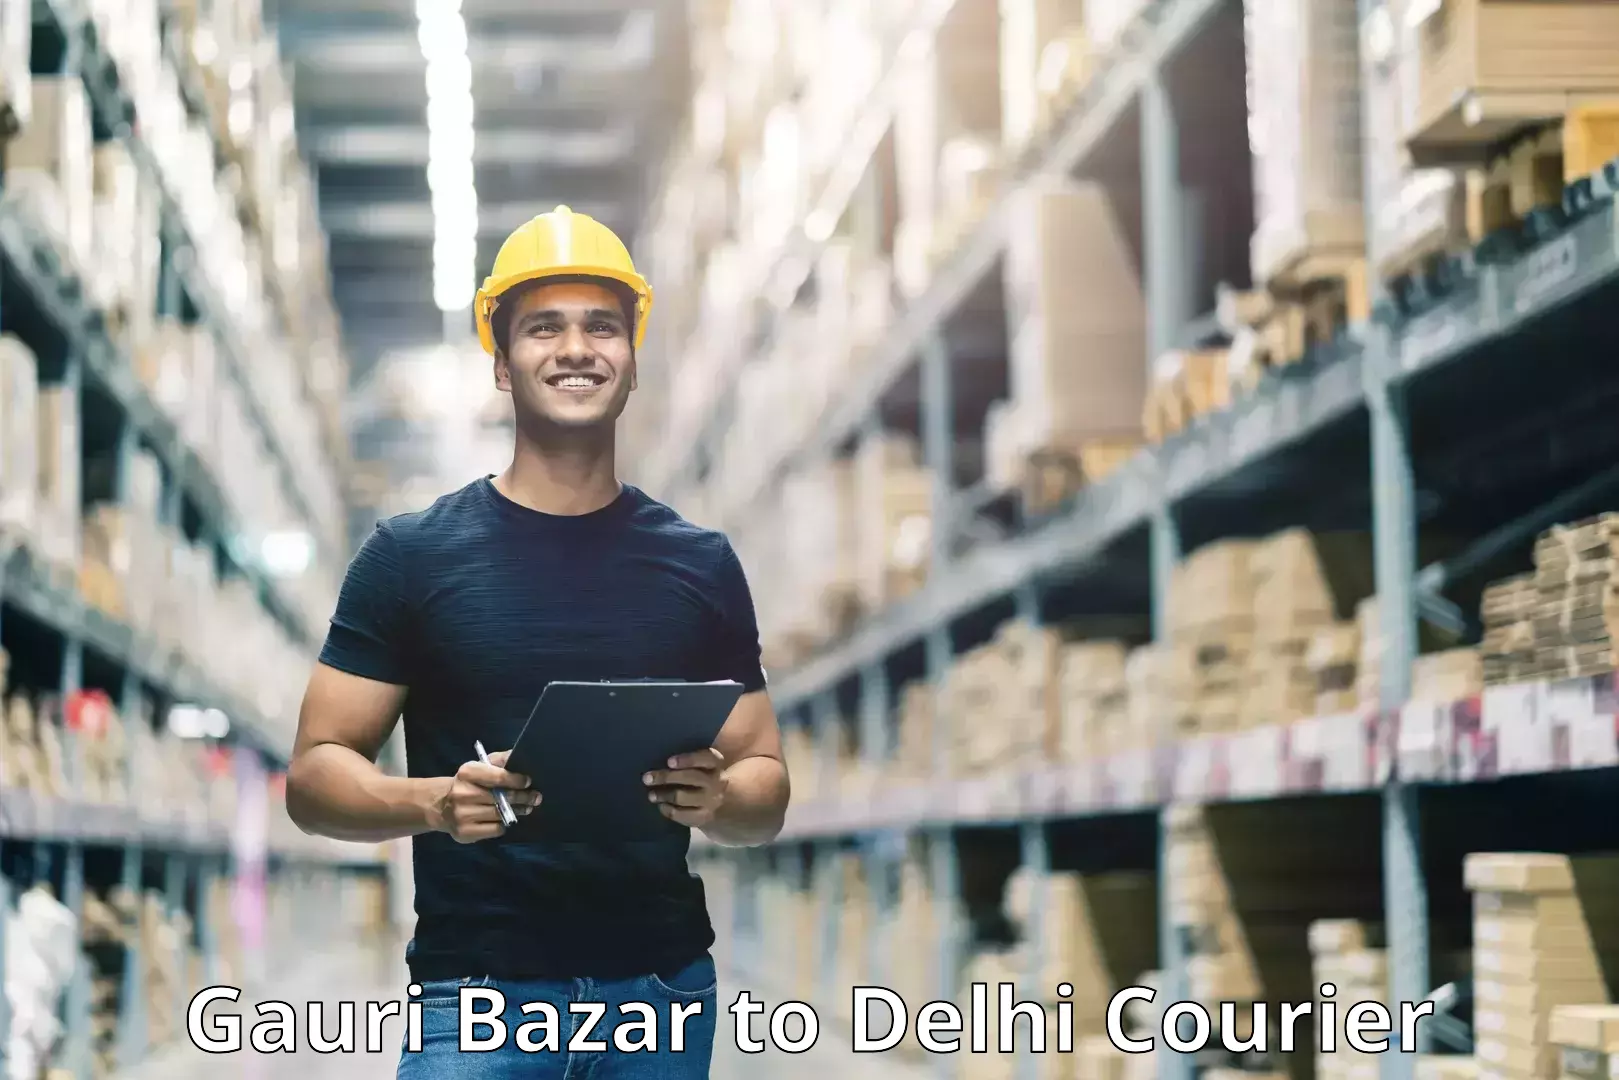 Next-day freight services Gauri Bazar to Delhi